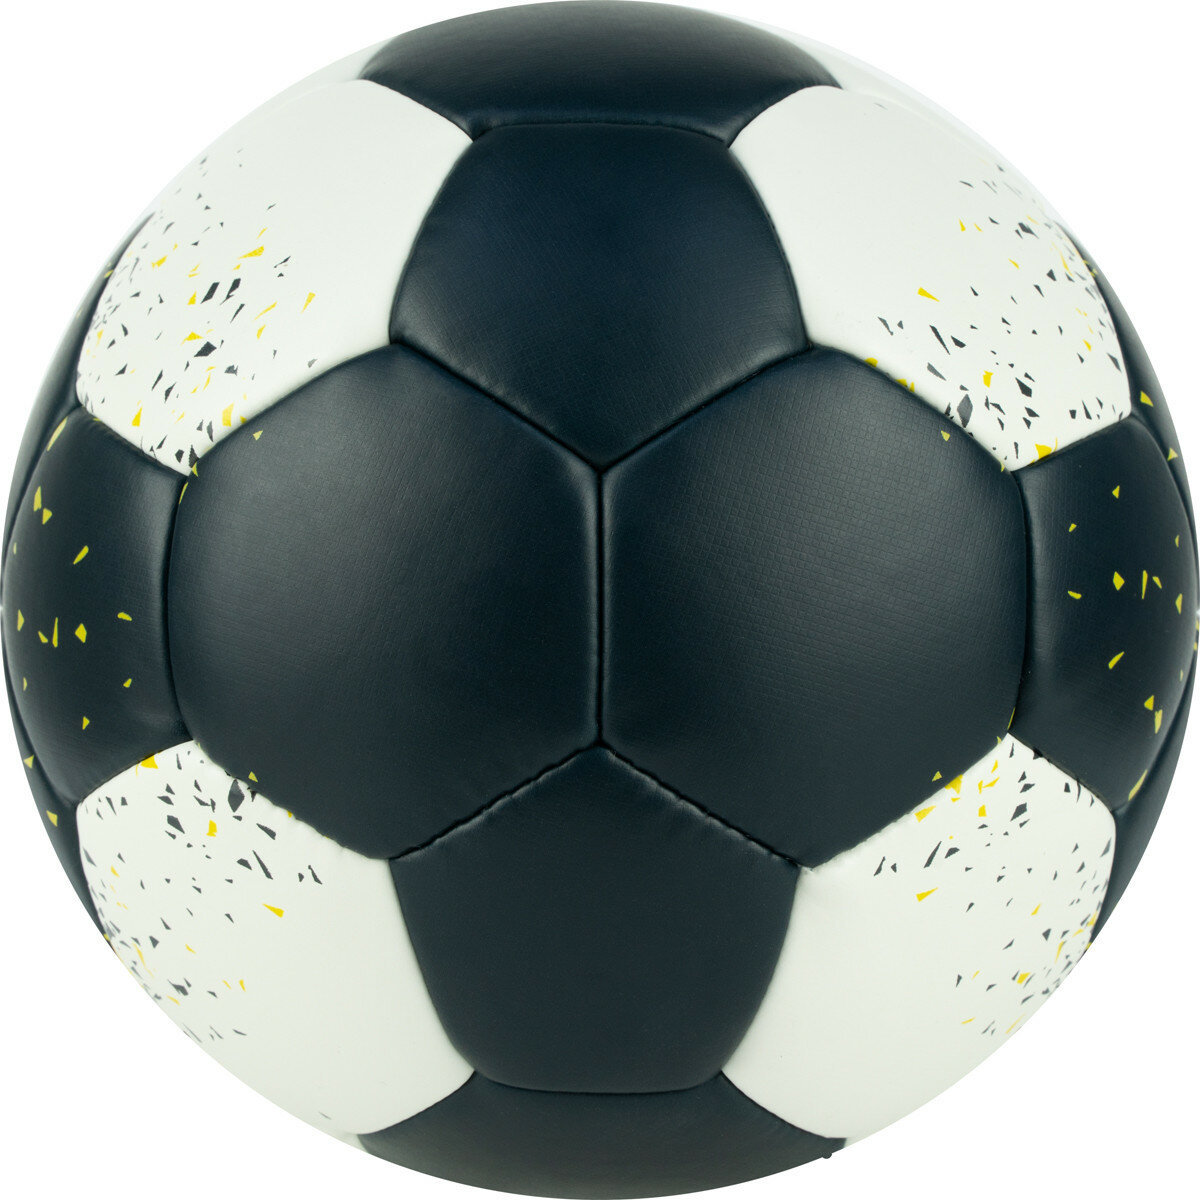 Мяч гандбольный TORRES PRO H32161, размер 1